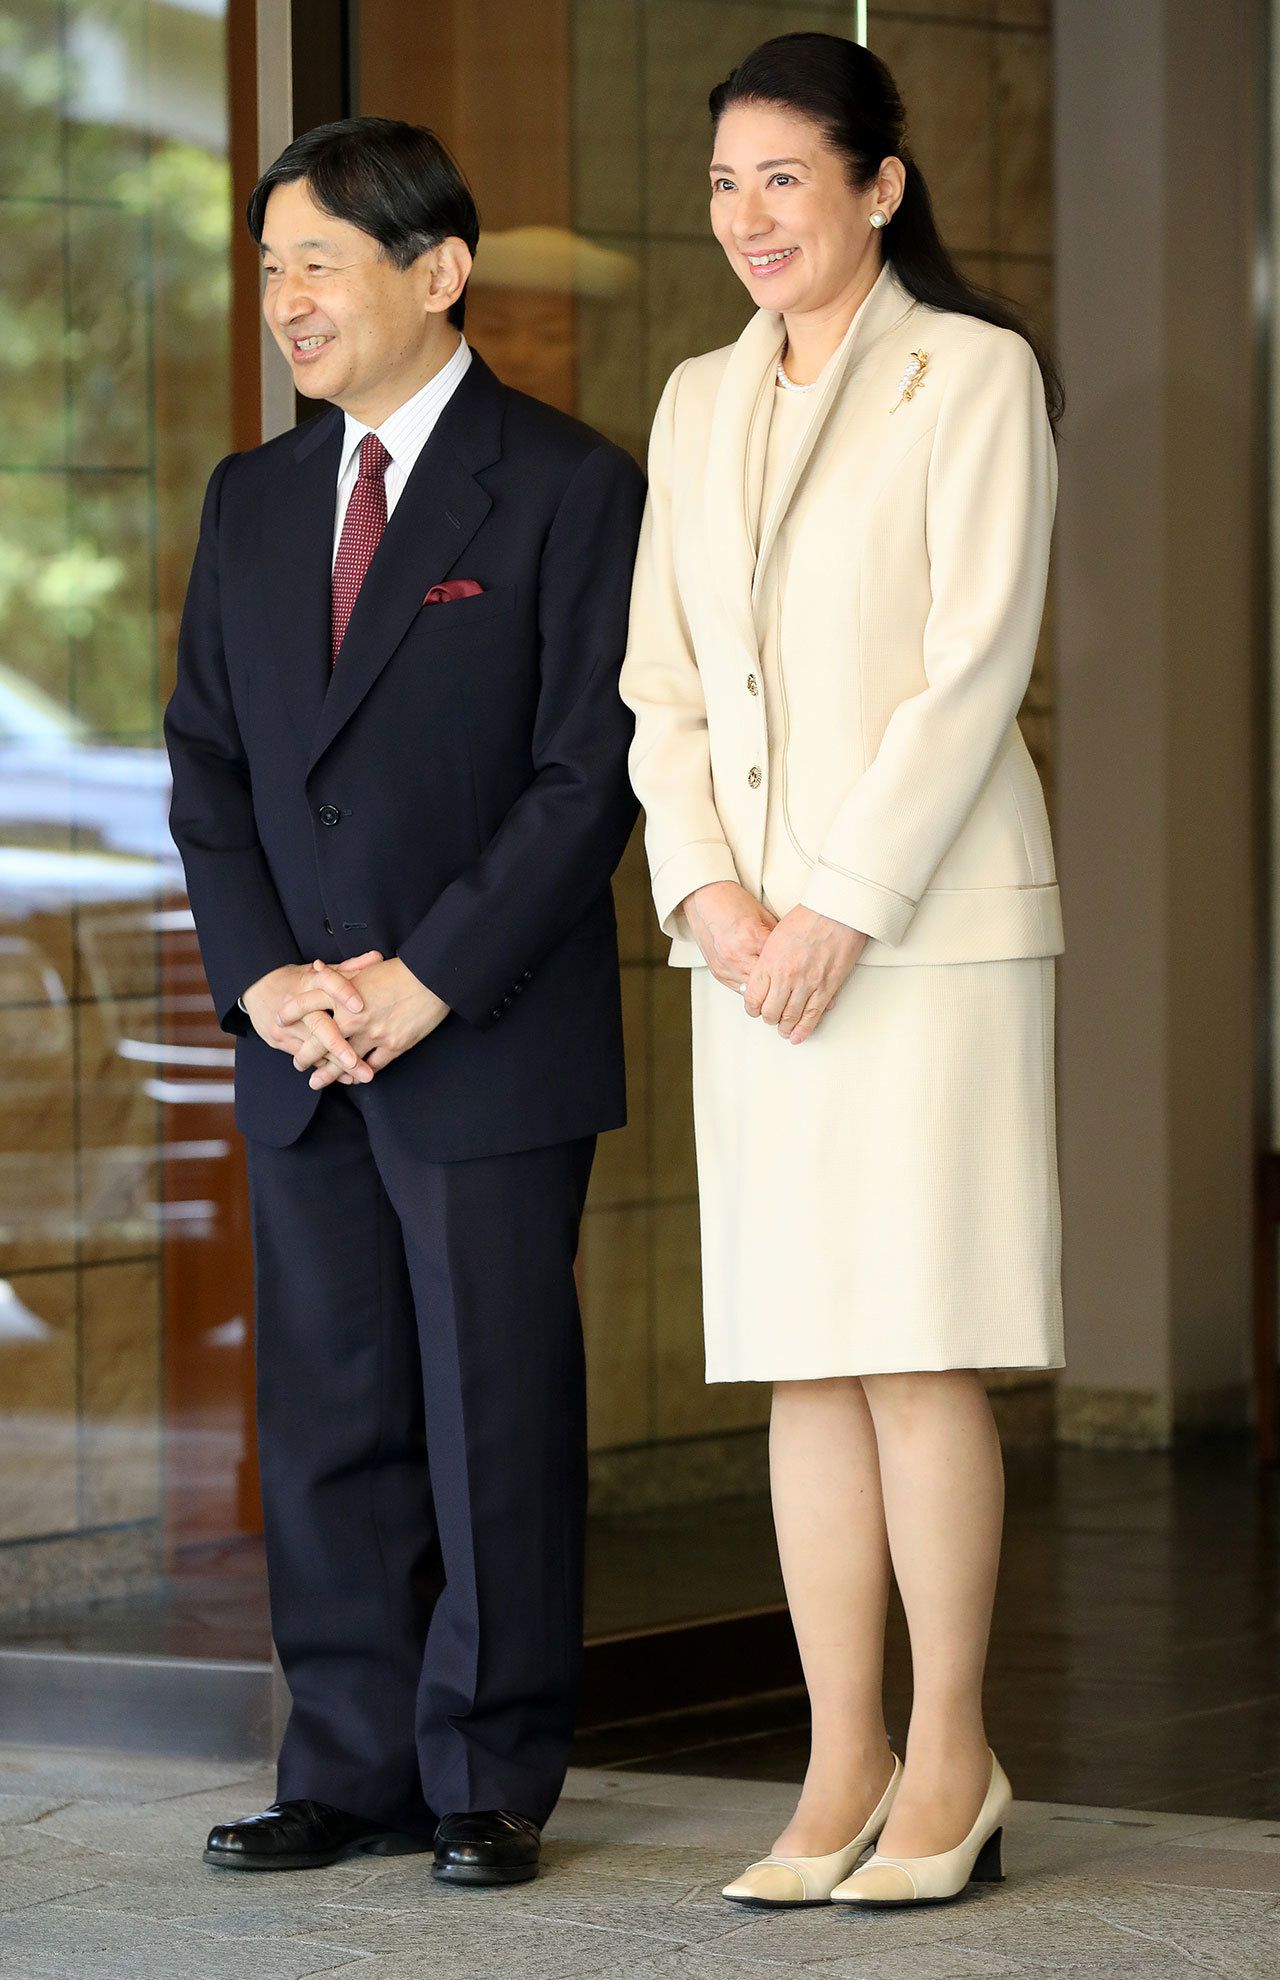 雅子さまの画像 写真 スペイン国王夫妻の歓迎式典にご参列の雅子さま 陛下の右がレティシア王妃 4月5日 73枚目 週刊女性prime